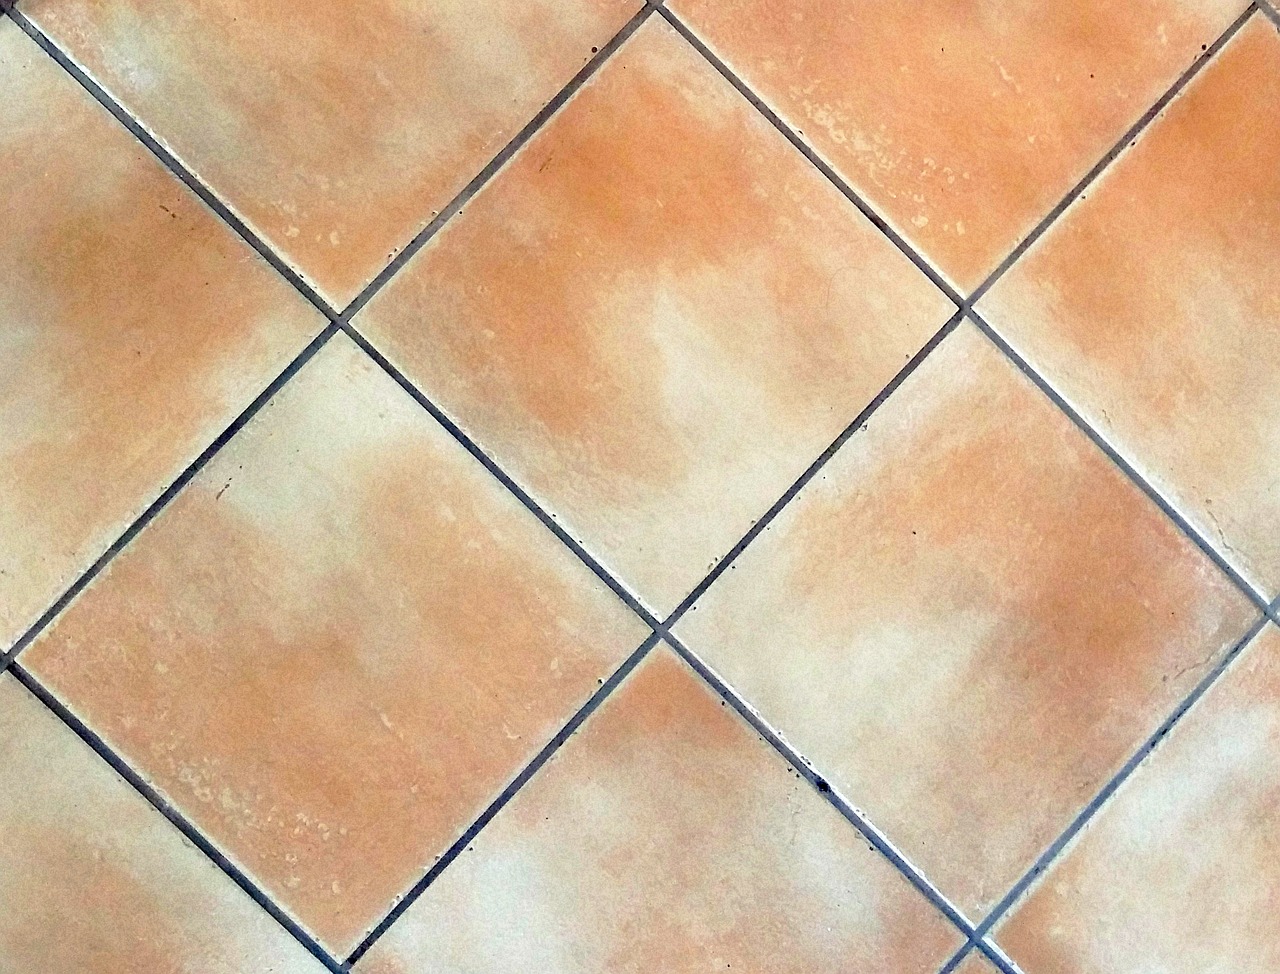 soil tiles square free photo